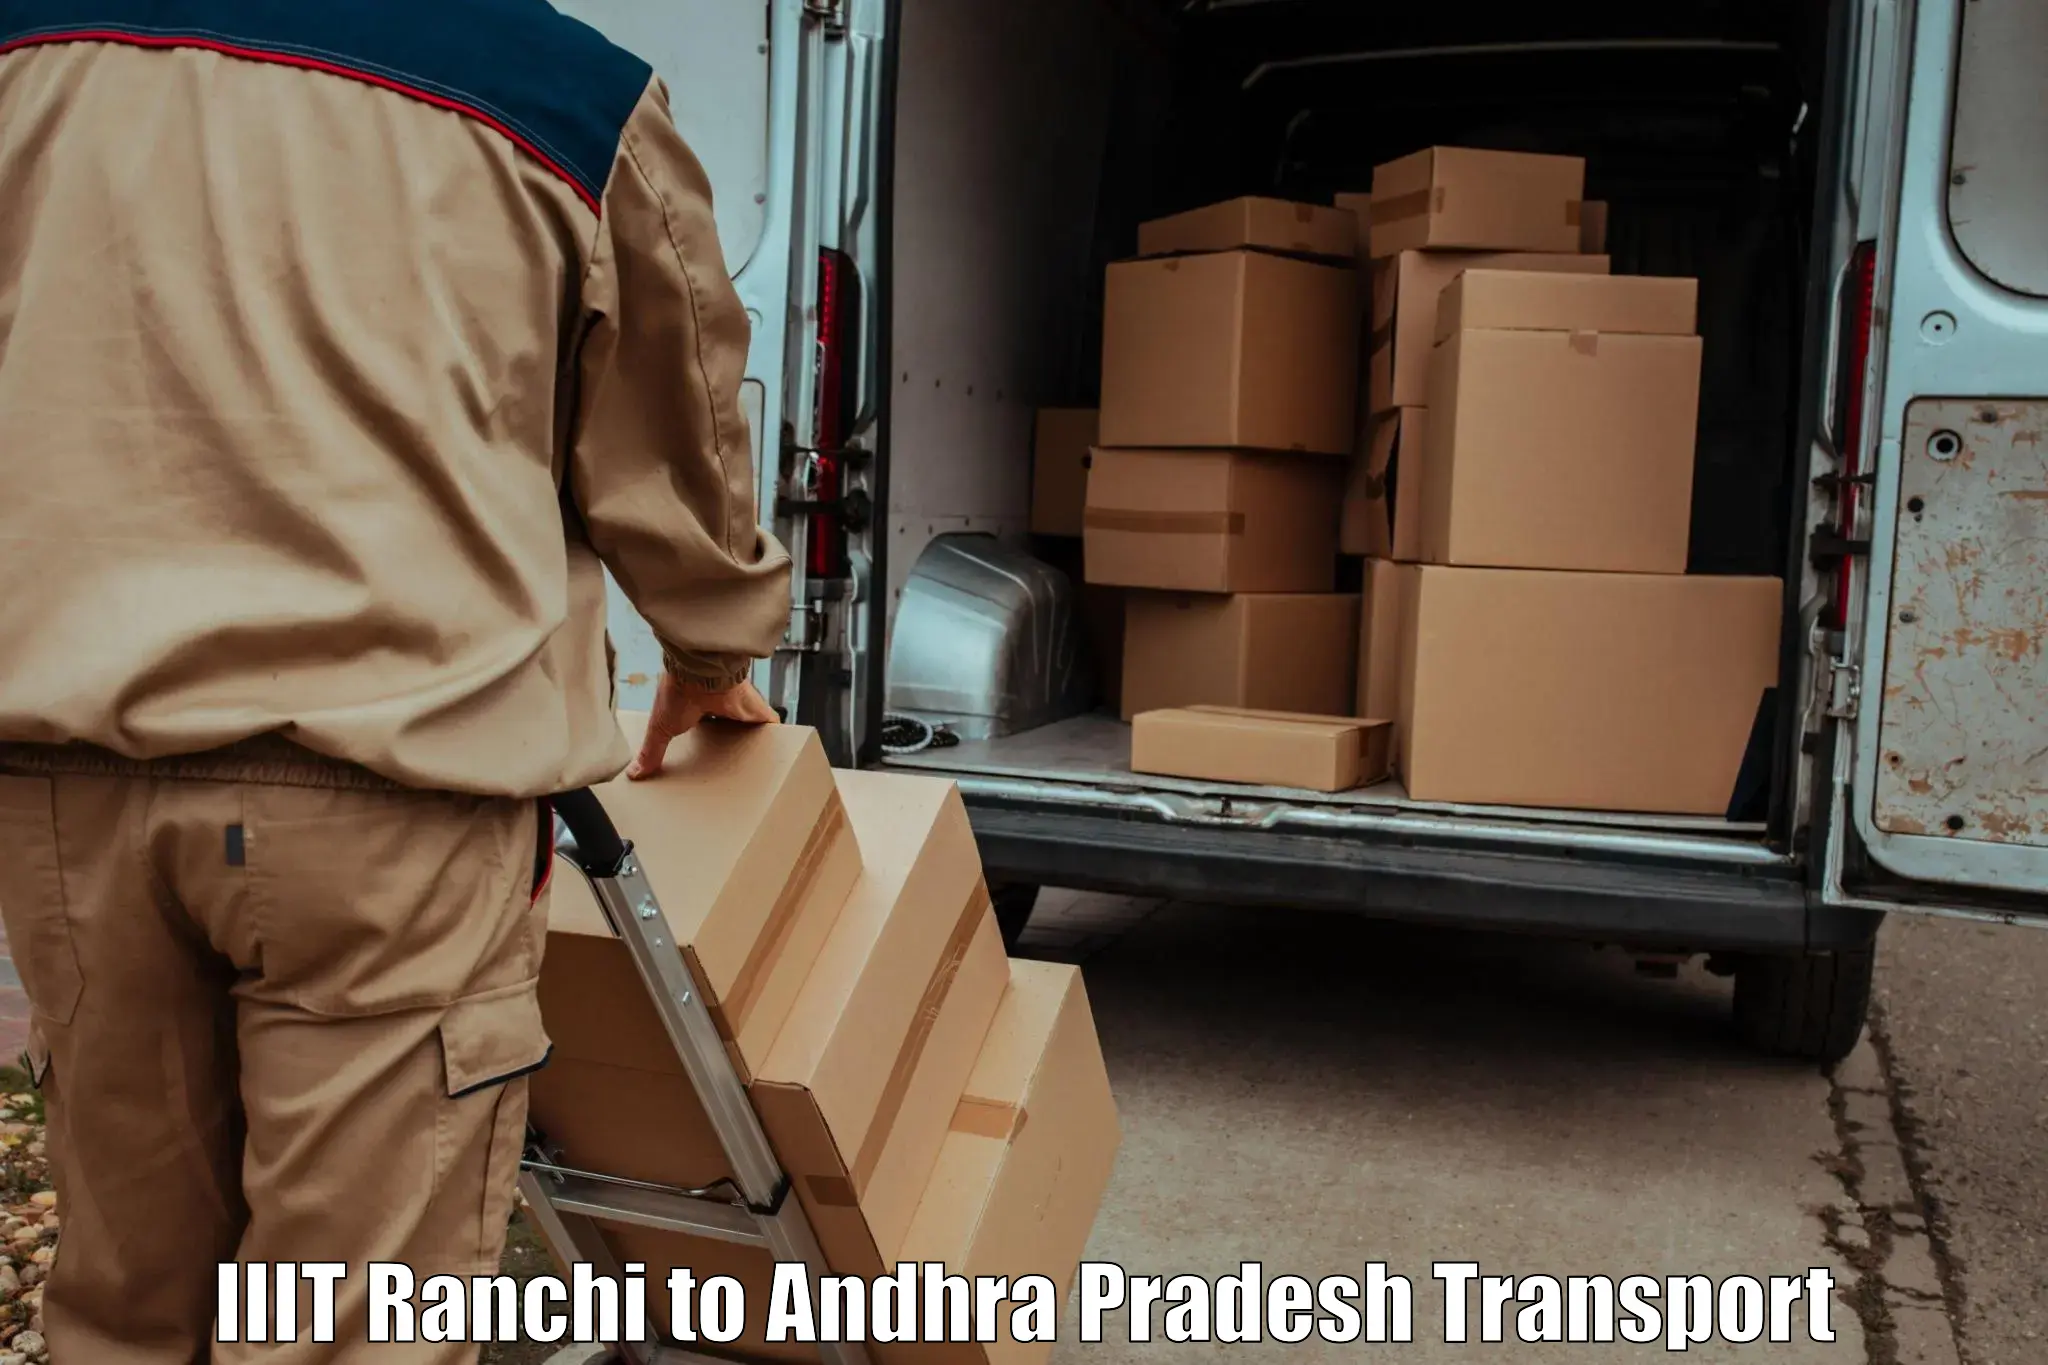 Pick up transport service IIIT Ranchi to Kalyandurg